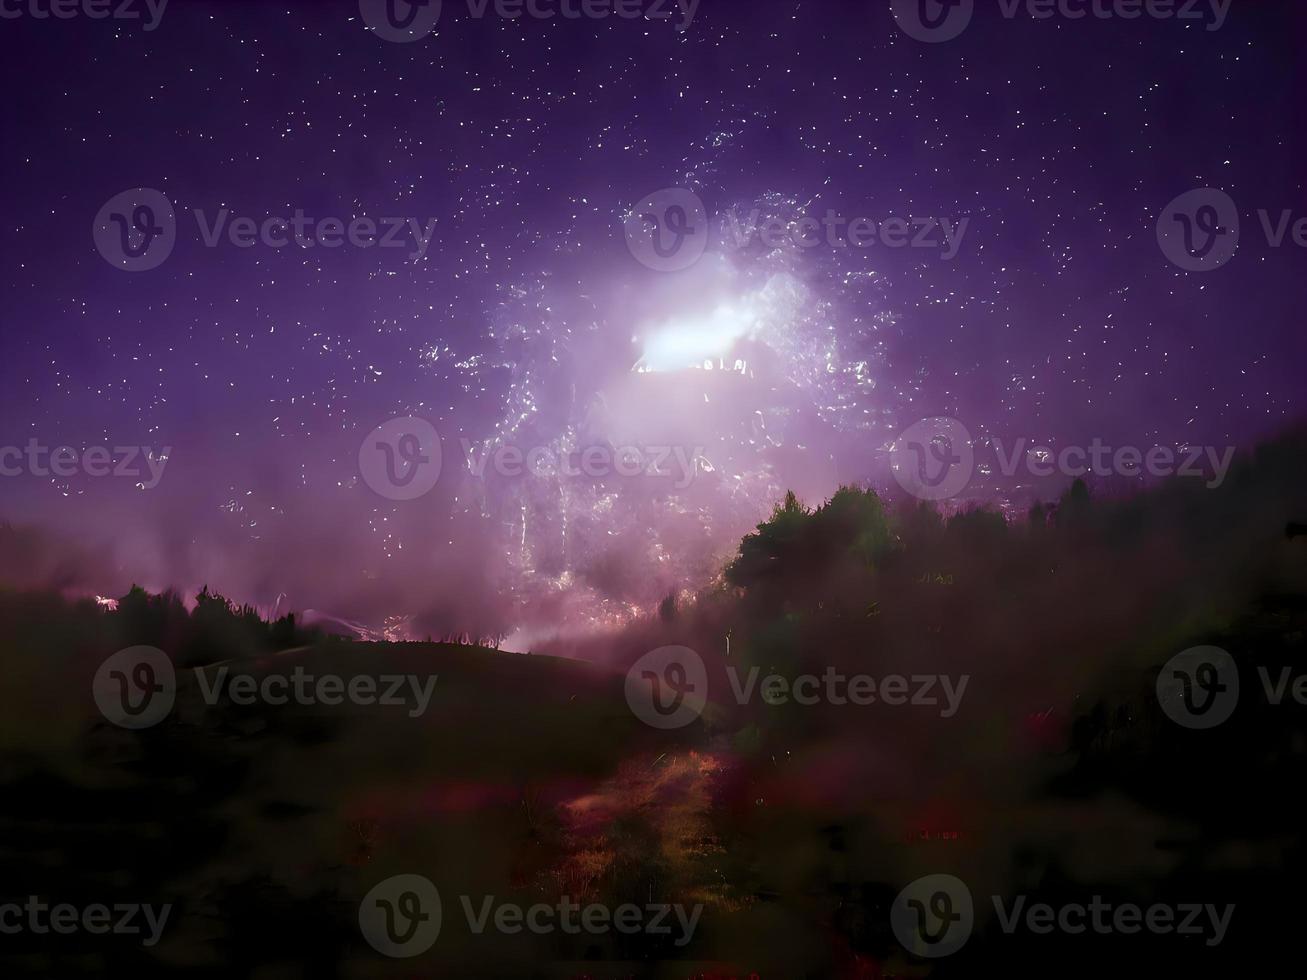 vía láctea y luz rosa en las montañas. paisaje colorido nocturno. cielo estrellado con colinas. hermoso universo. fondo espacial con galaxia. fondo de viaje foto